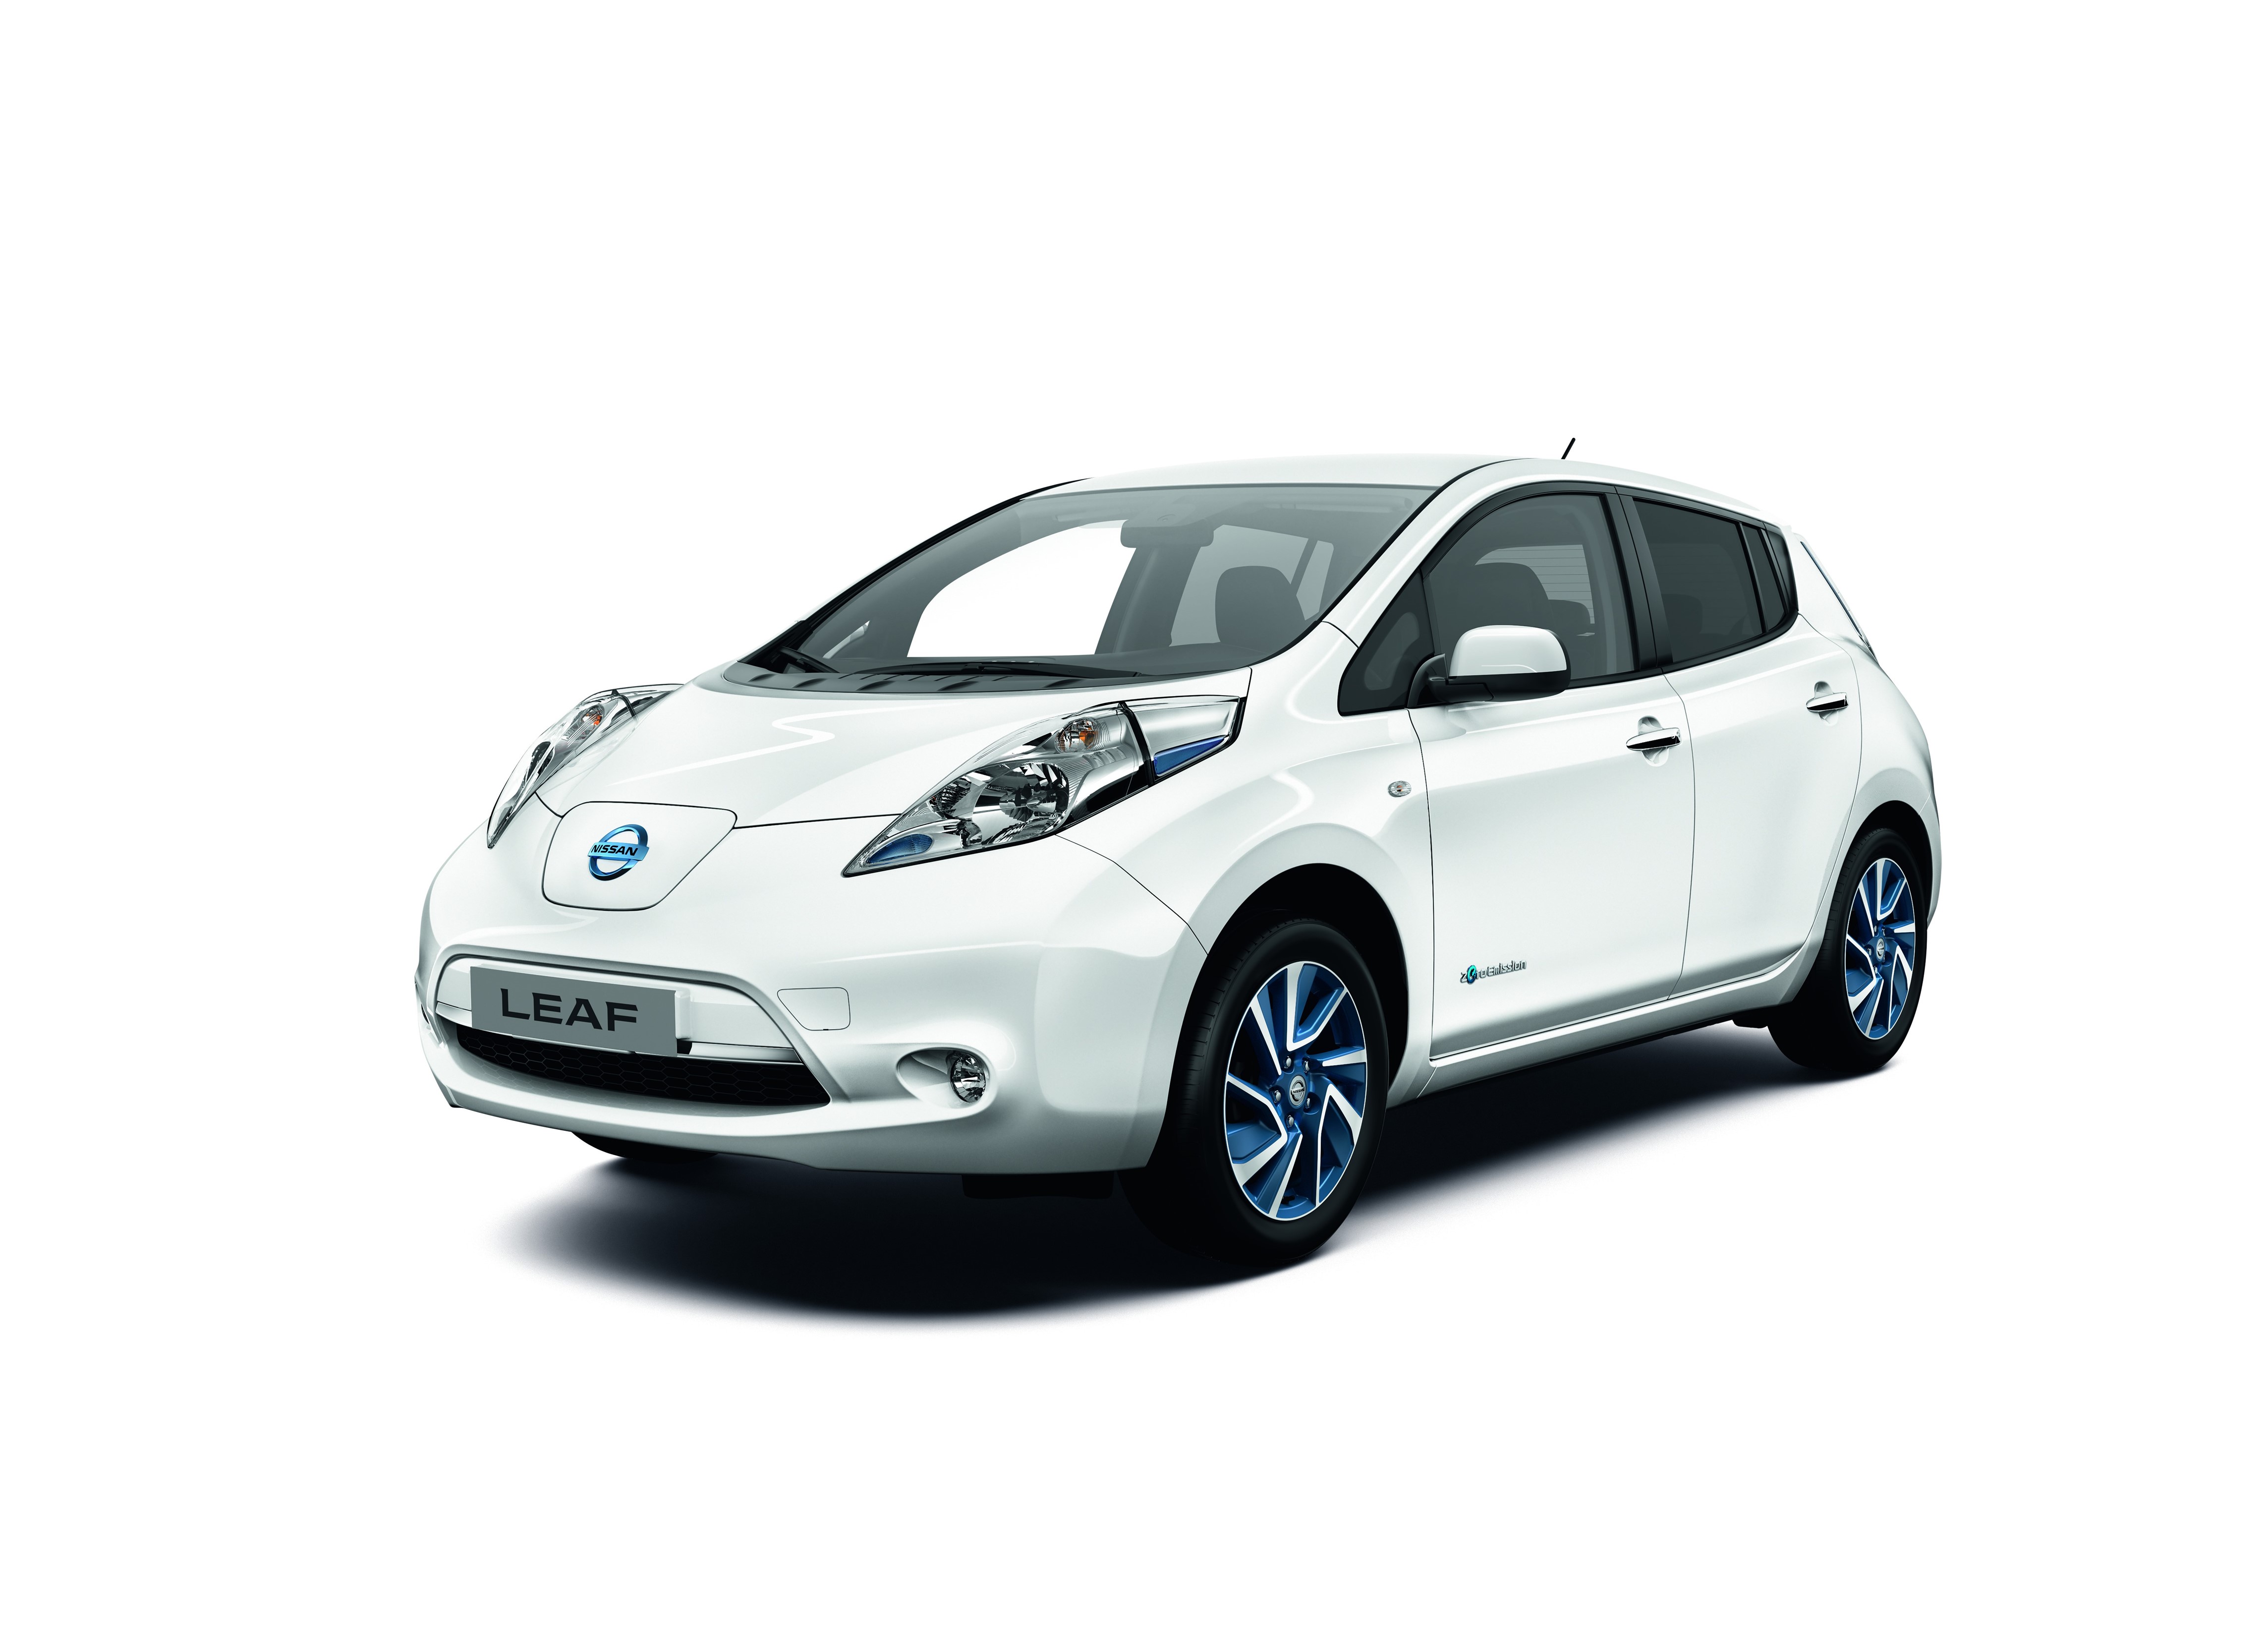 Die Limited Edition des Elektroauto Nissan Leaf lässt sich 3 Stunden schneller aufladen. Bildquelle: Nissan